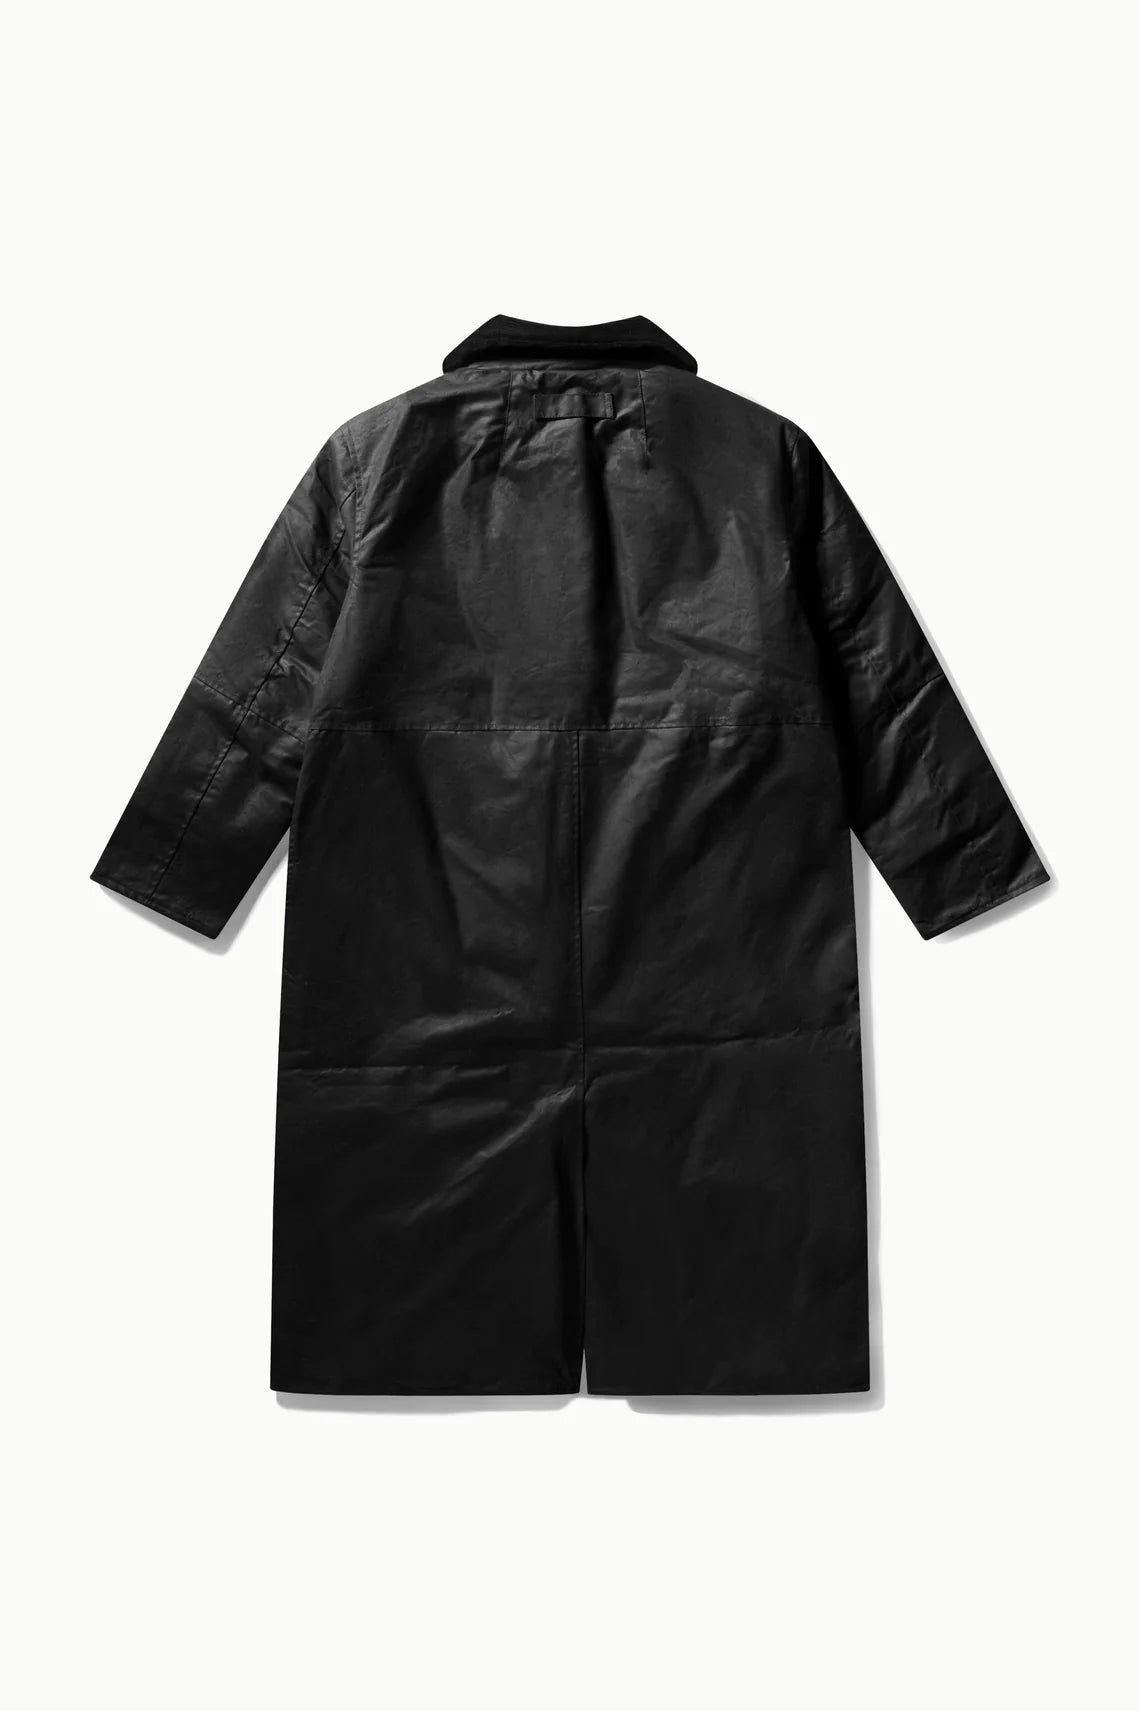 Joan jett padded coat in black